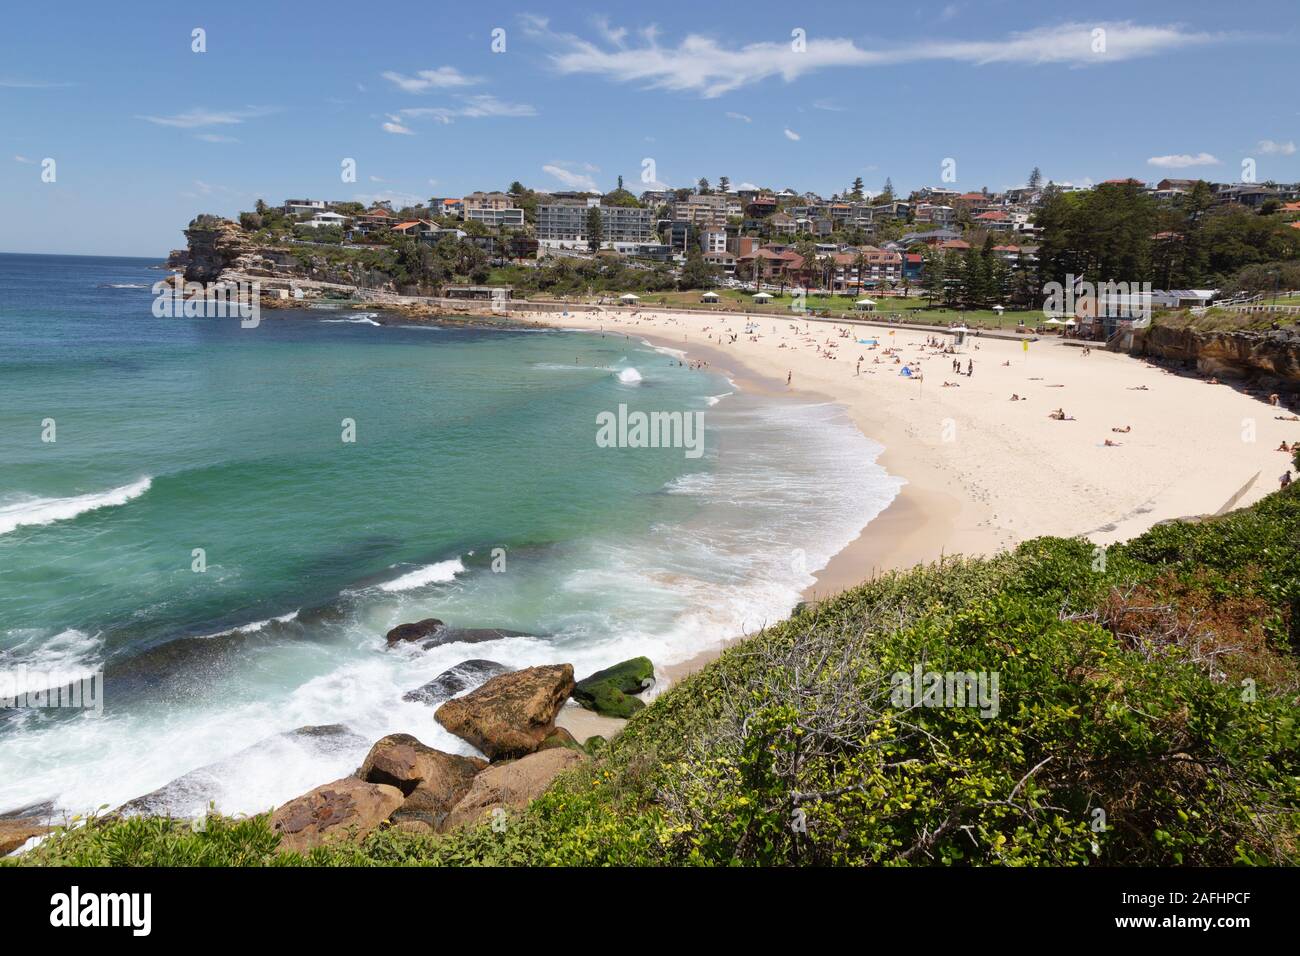 Spiagge di Sydney - Bronte Beach, Sydney Australia - gente sulla spiaggia in una giornata di sole in estate, Sydney Australia Foto Stock